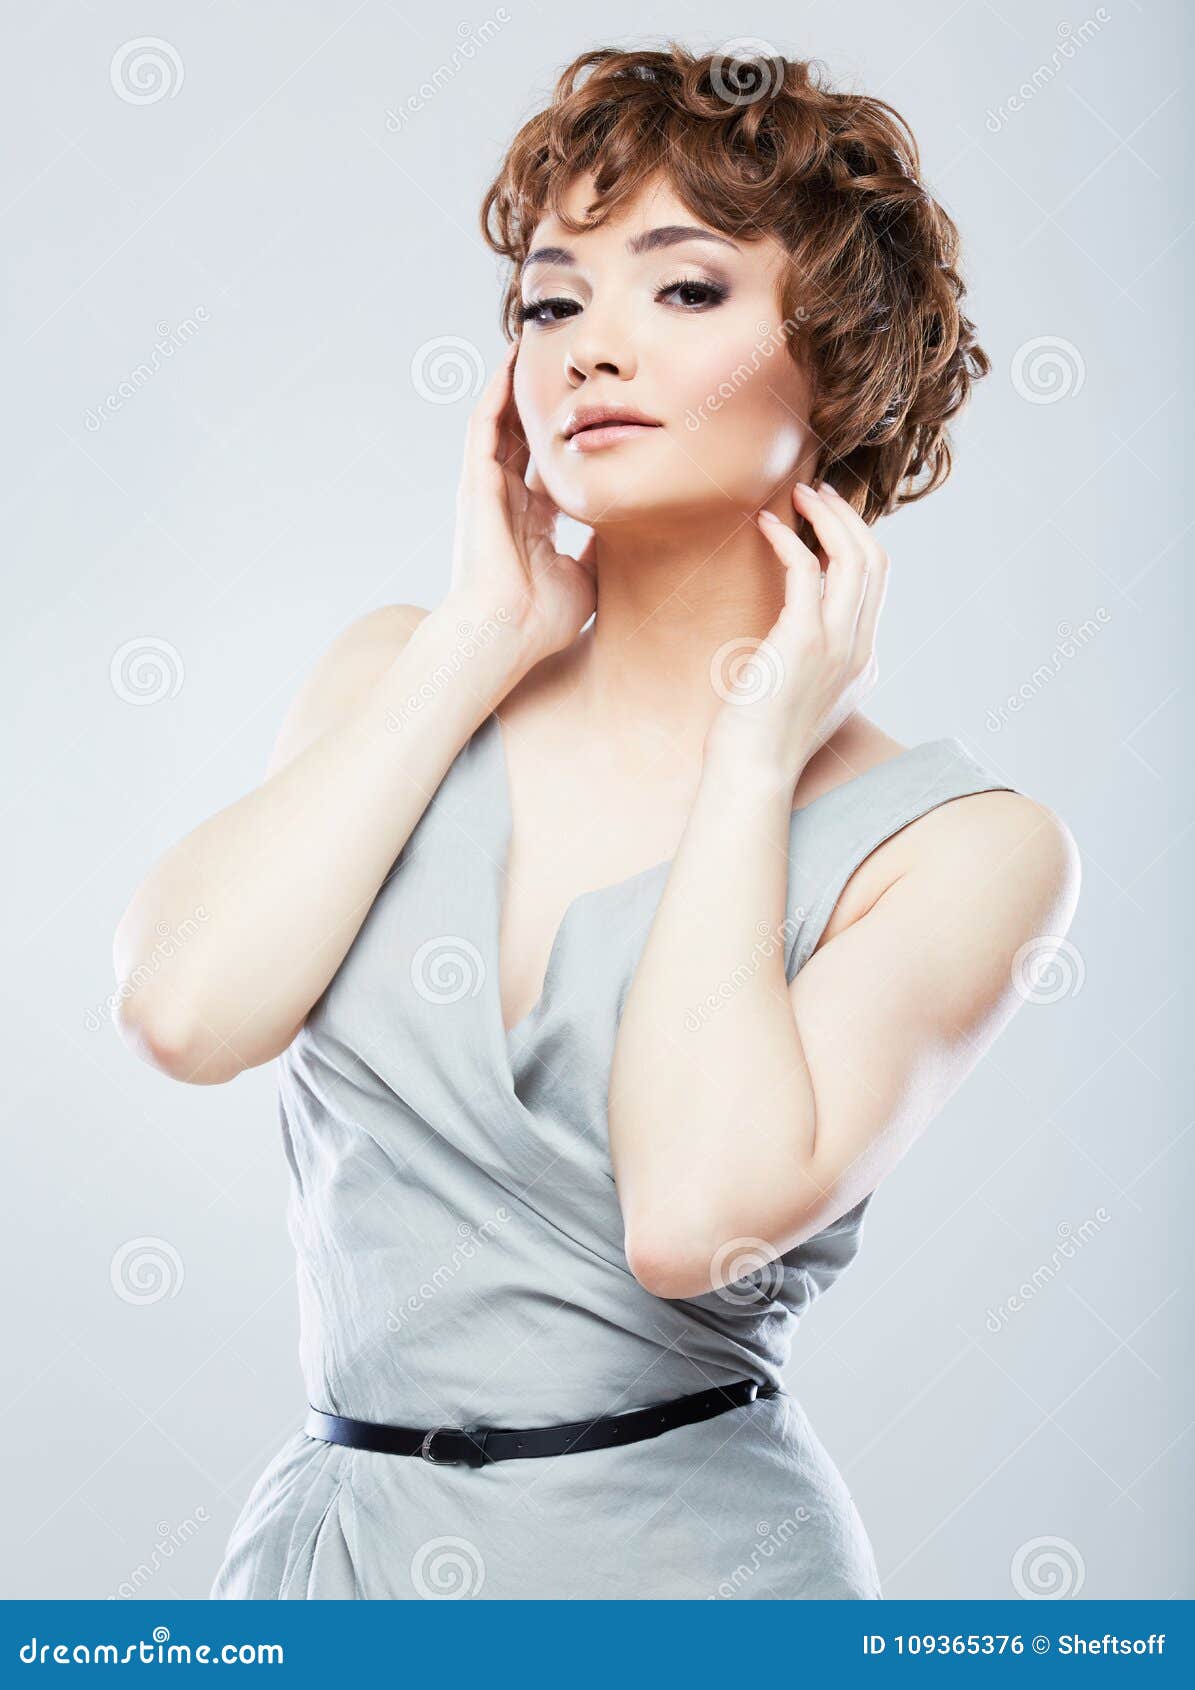 Fashion Snapshot Style Female Portrait Stock Photo Image Of